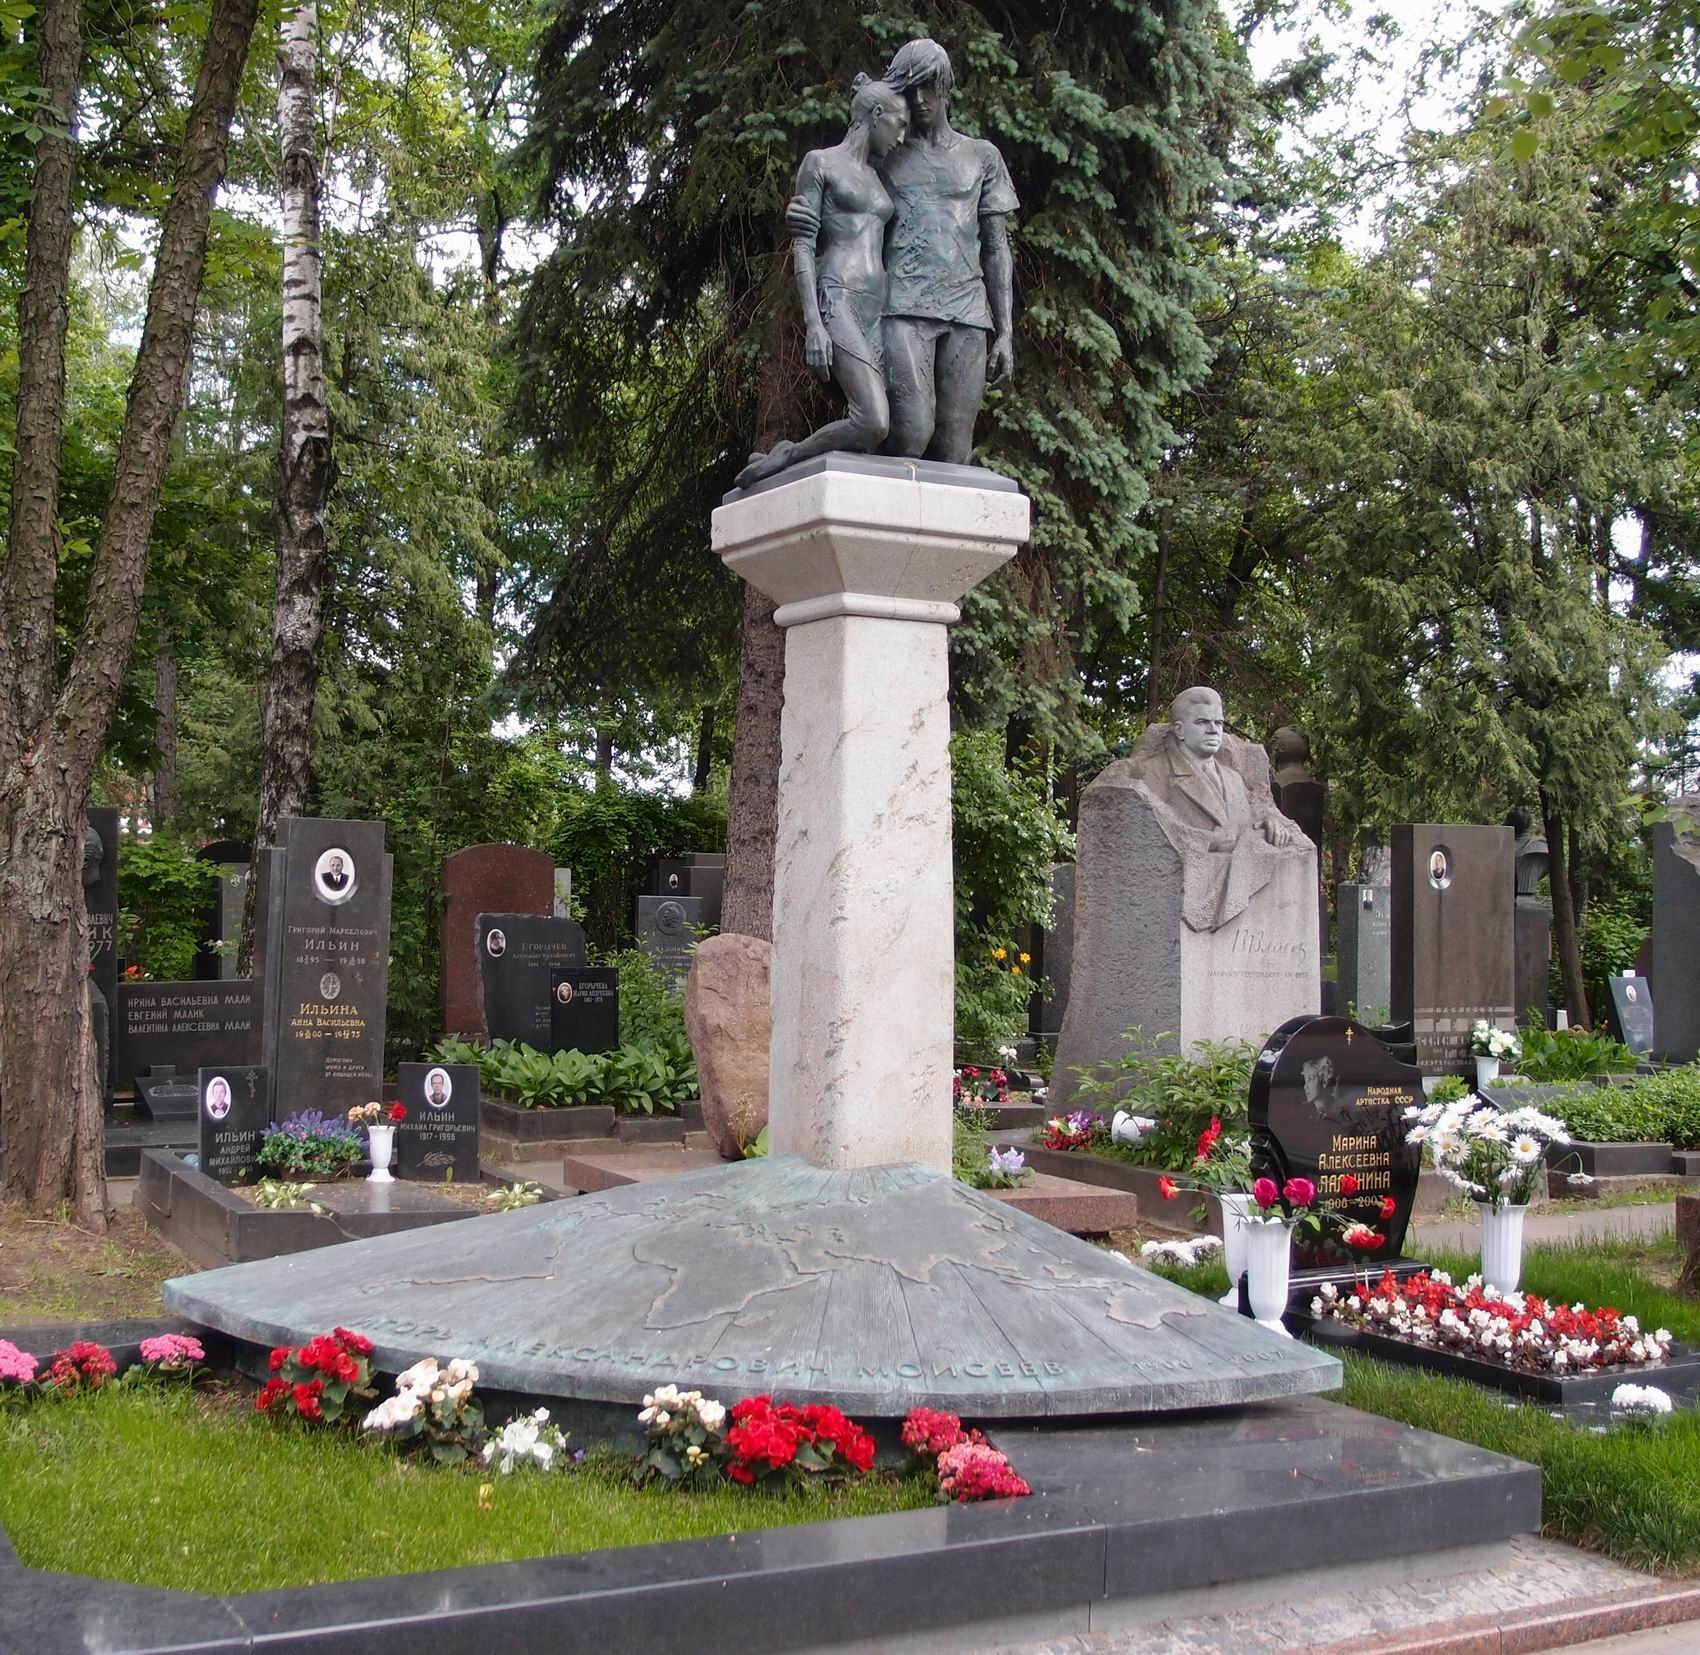 Памятник на могиле Моисеева И.А. (1906-2007), ск. А.Рукавишников, арх. С.Шаров, на Новодевичьем кладбище (5-23а-1). Нажмите левую кнопку мыши чтобы увидеть фрагмент памятника.